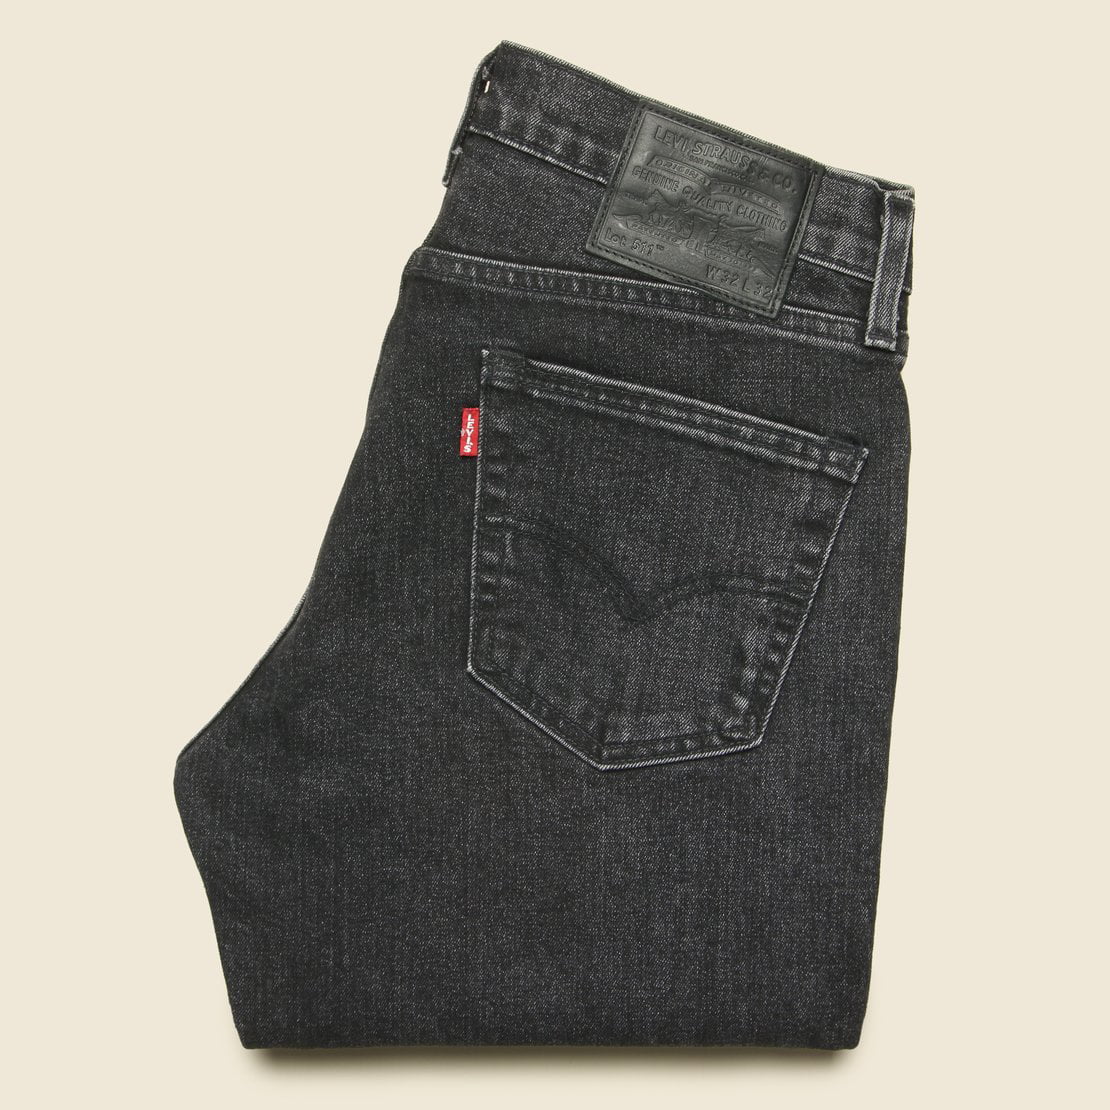 Levi's CHILE WARM 511 Slim Fit Men's Jeans, US 33x32 